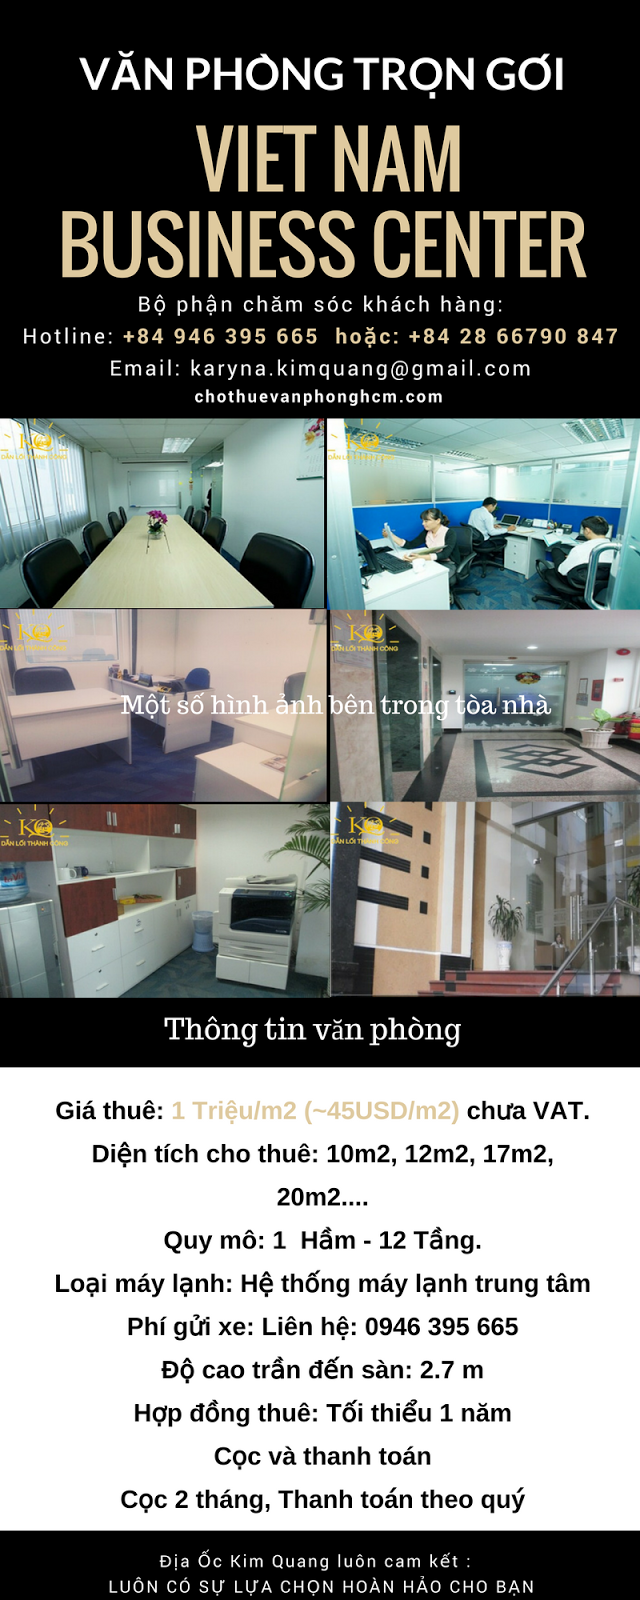 Văn phòng trọn gói Viet Nam Business Center